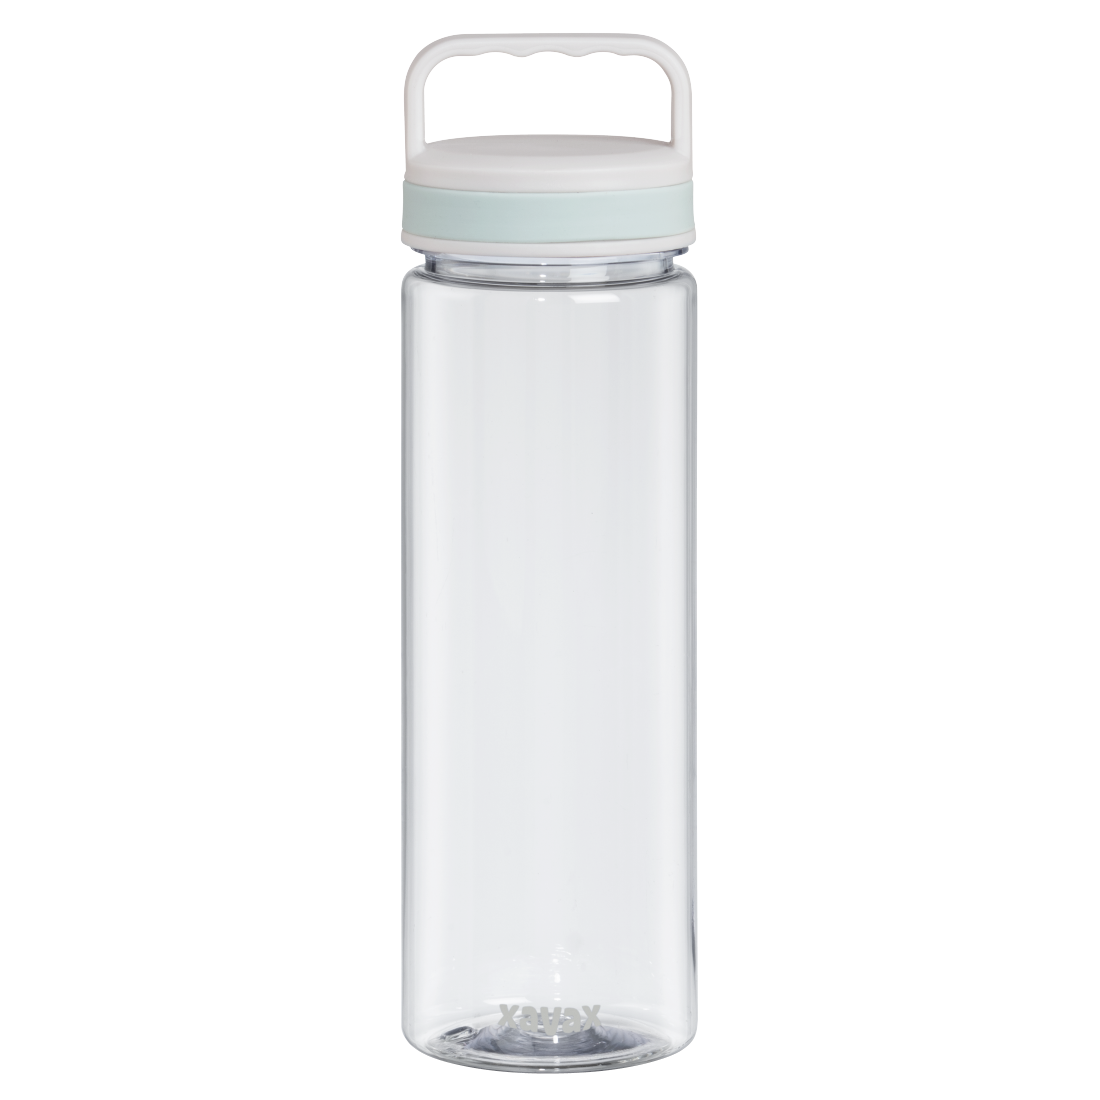 abx Druckfähige Abbildung - Xavax, Trinkflasche, 900ml, auslaufsicher, Henkel, Schraubverschluss, Transparent